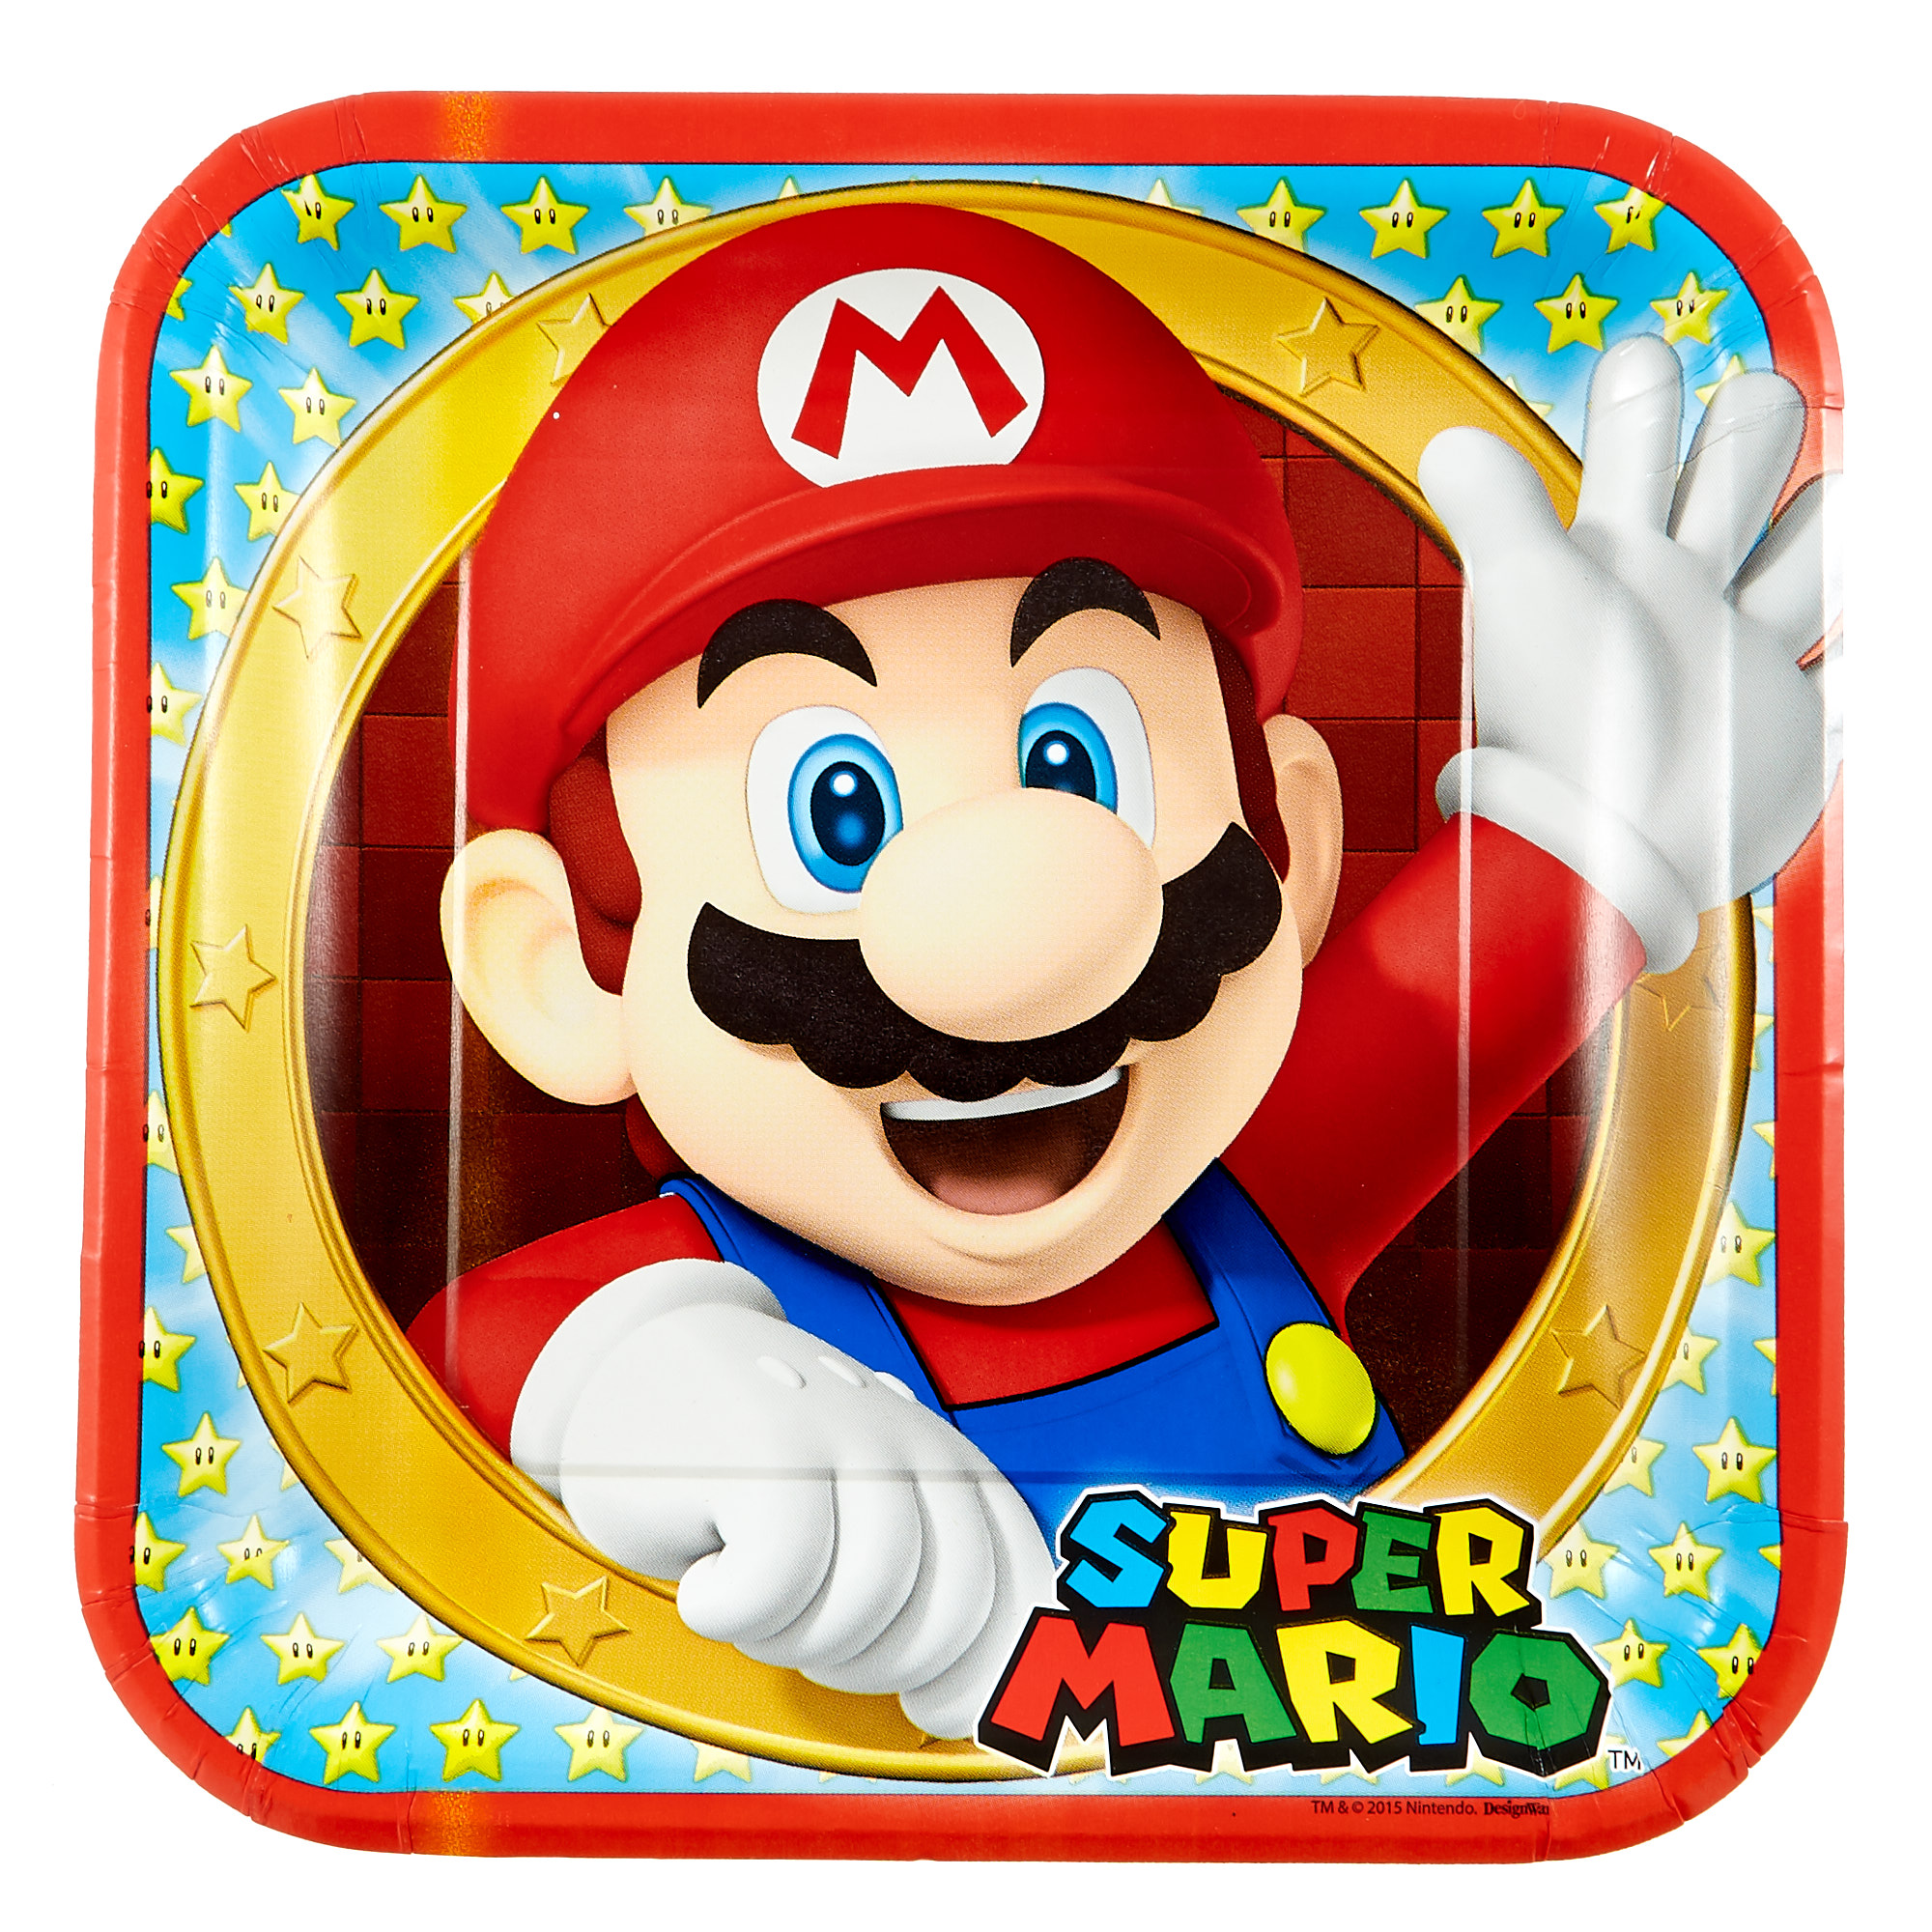 Super Mario Party Tableware & Decorations Bundle - 16 Guests